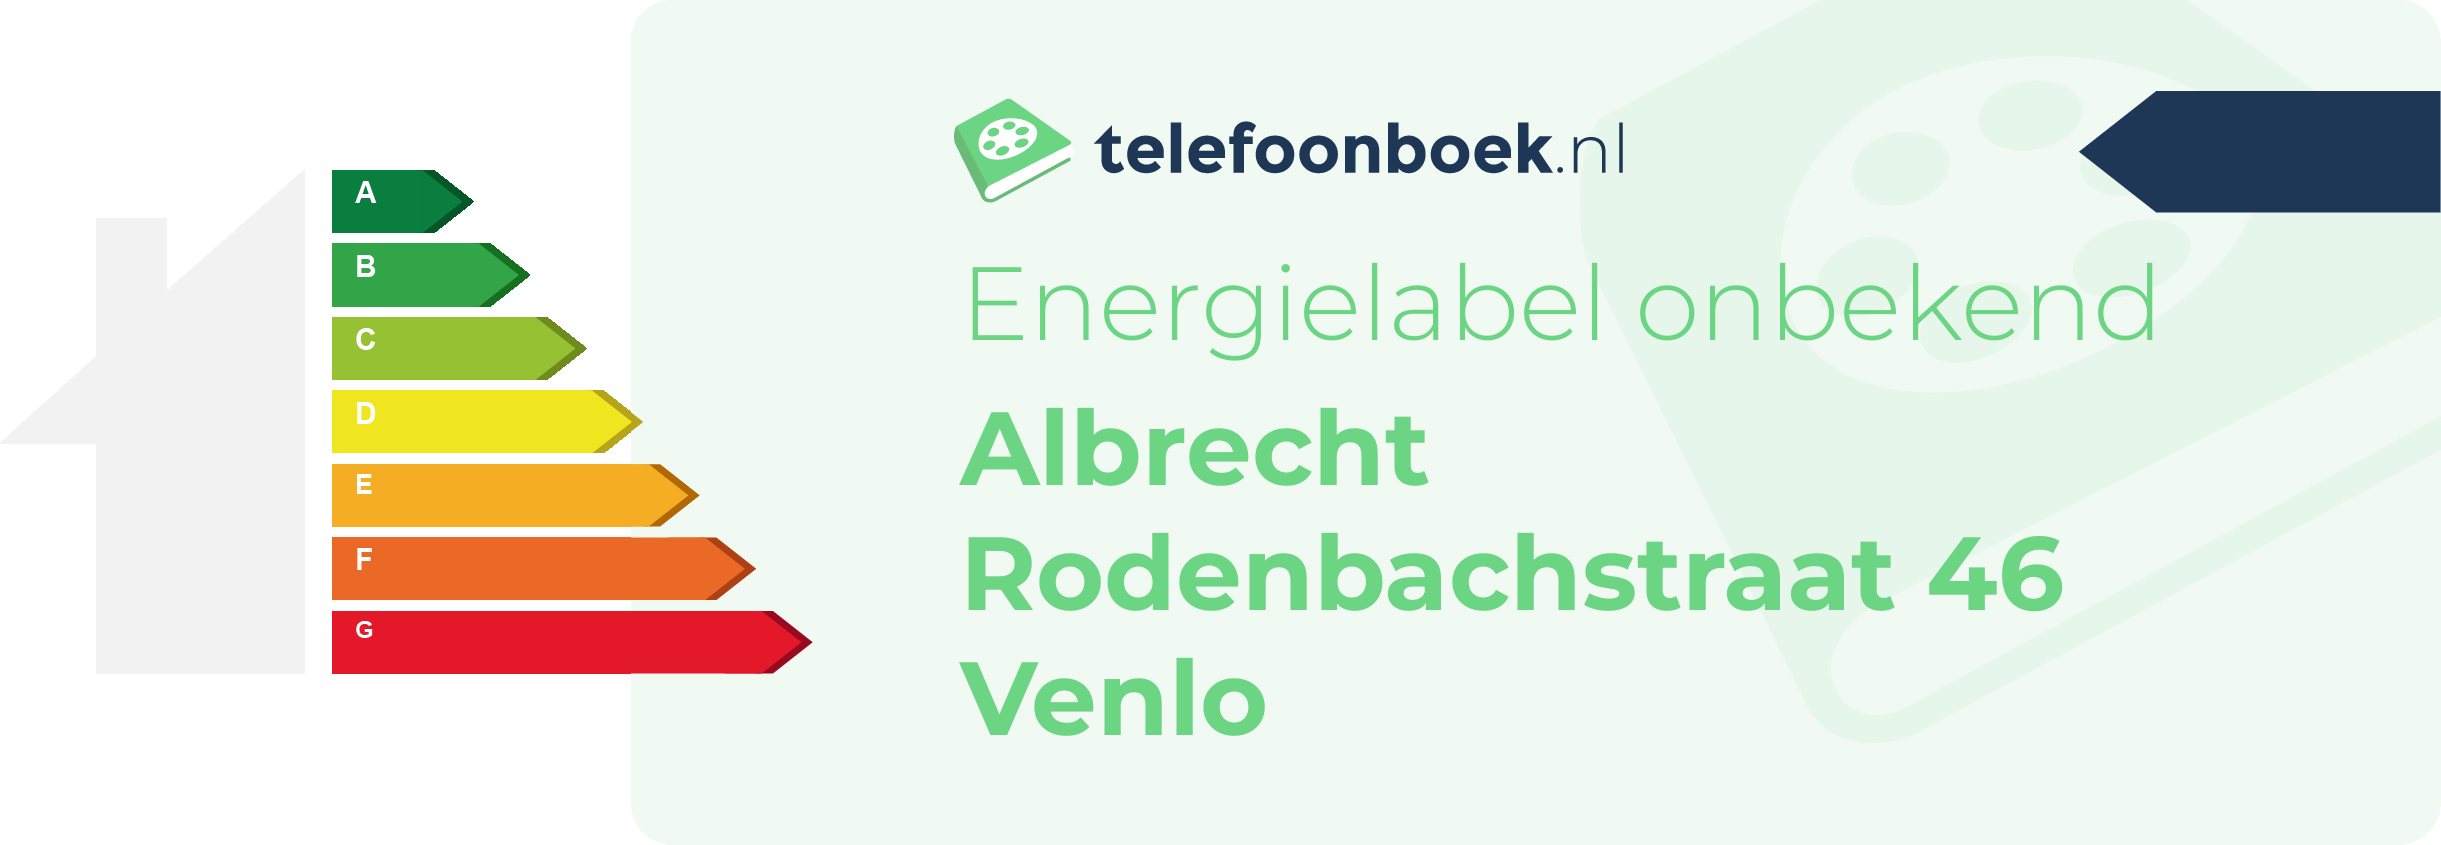 Energielabel Albrecht Rodenbachstraat 46 Venlo